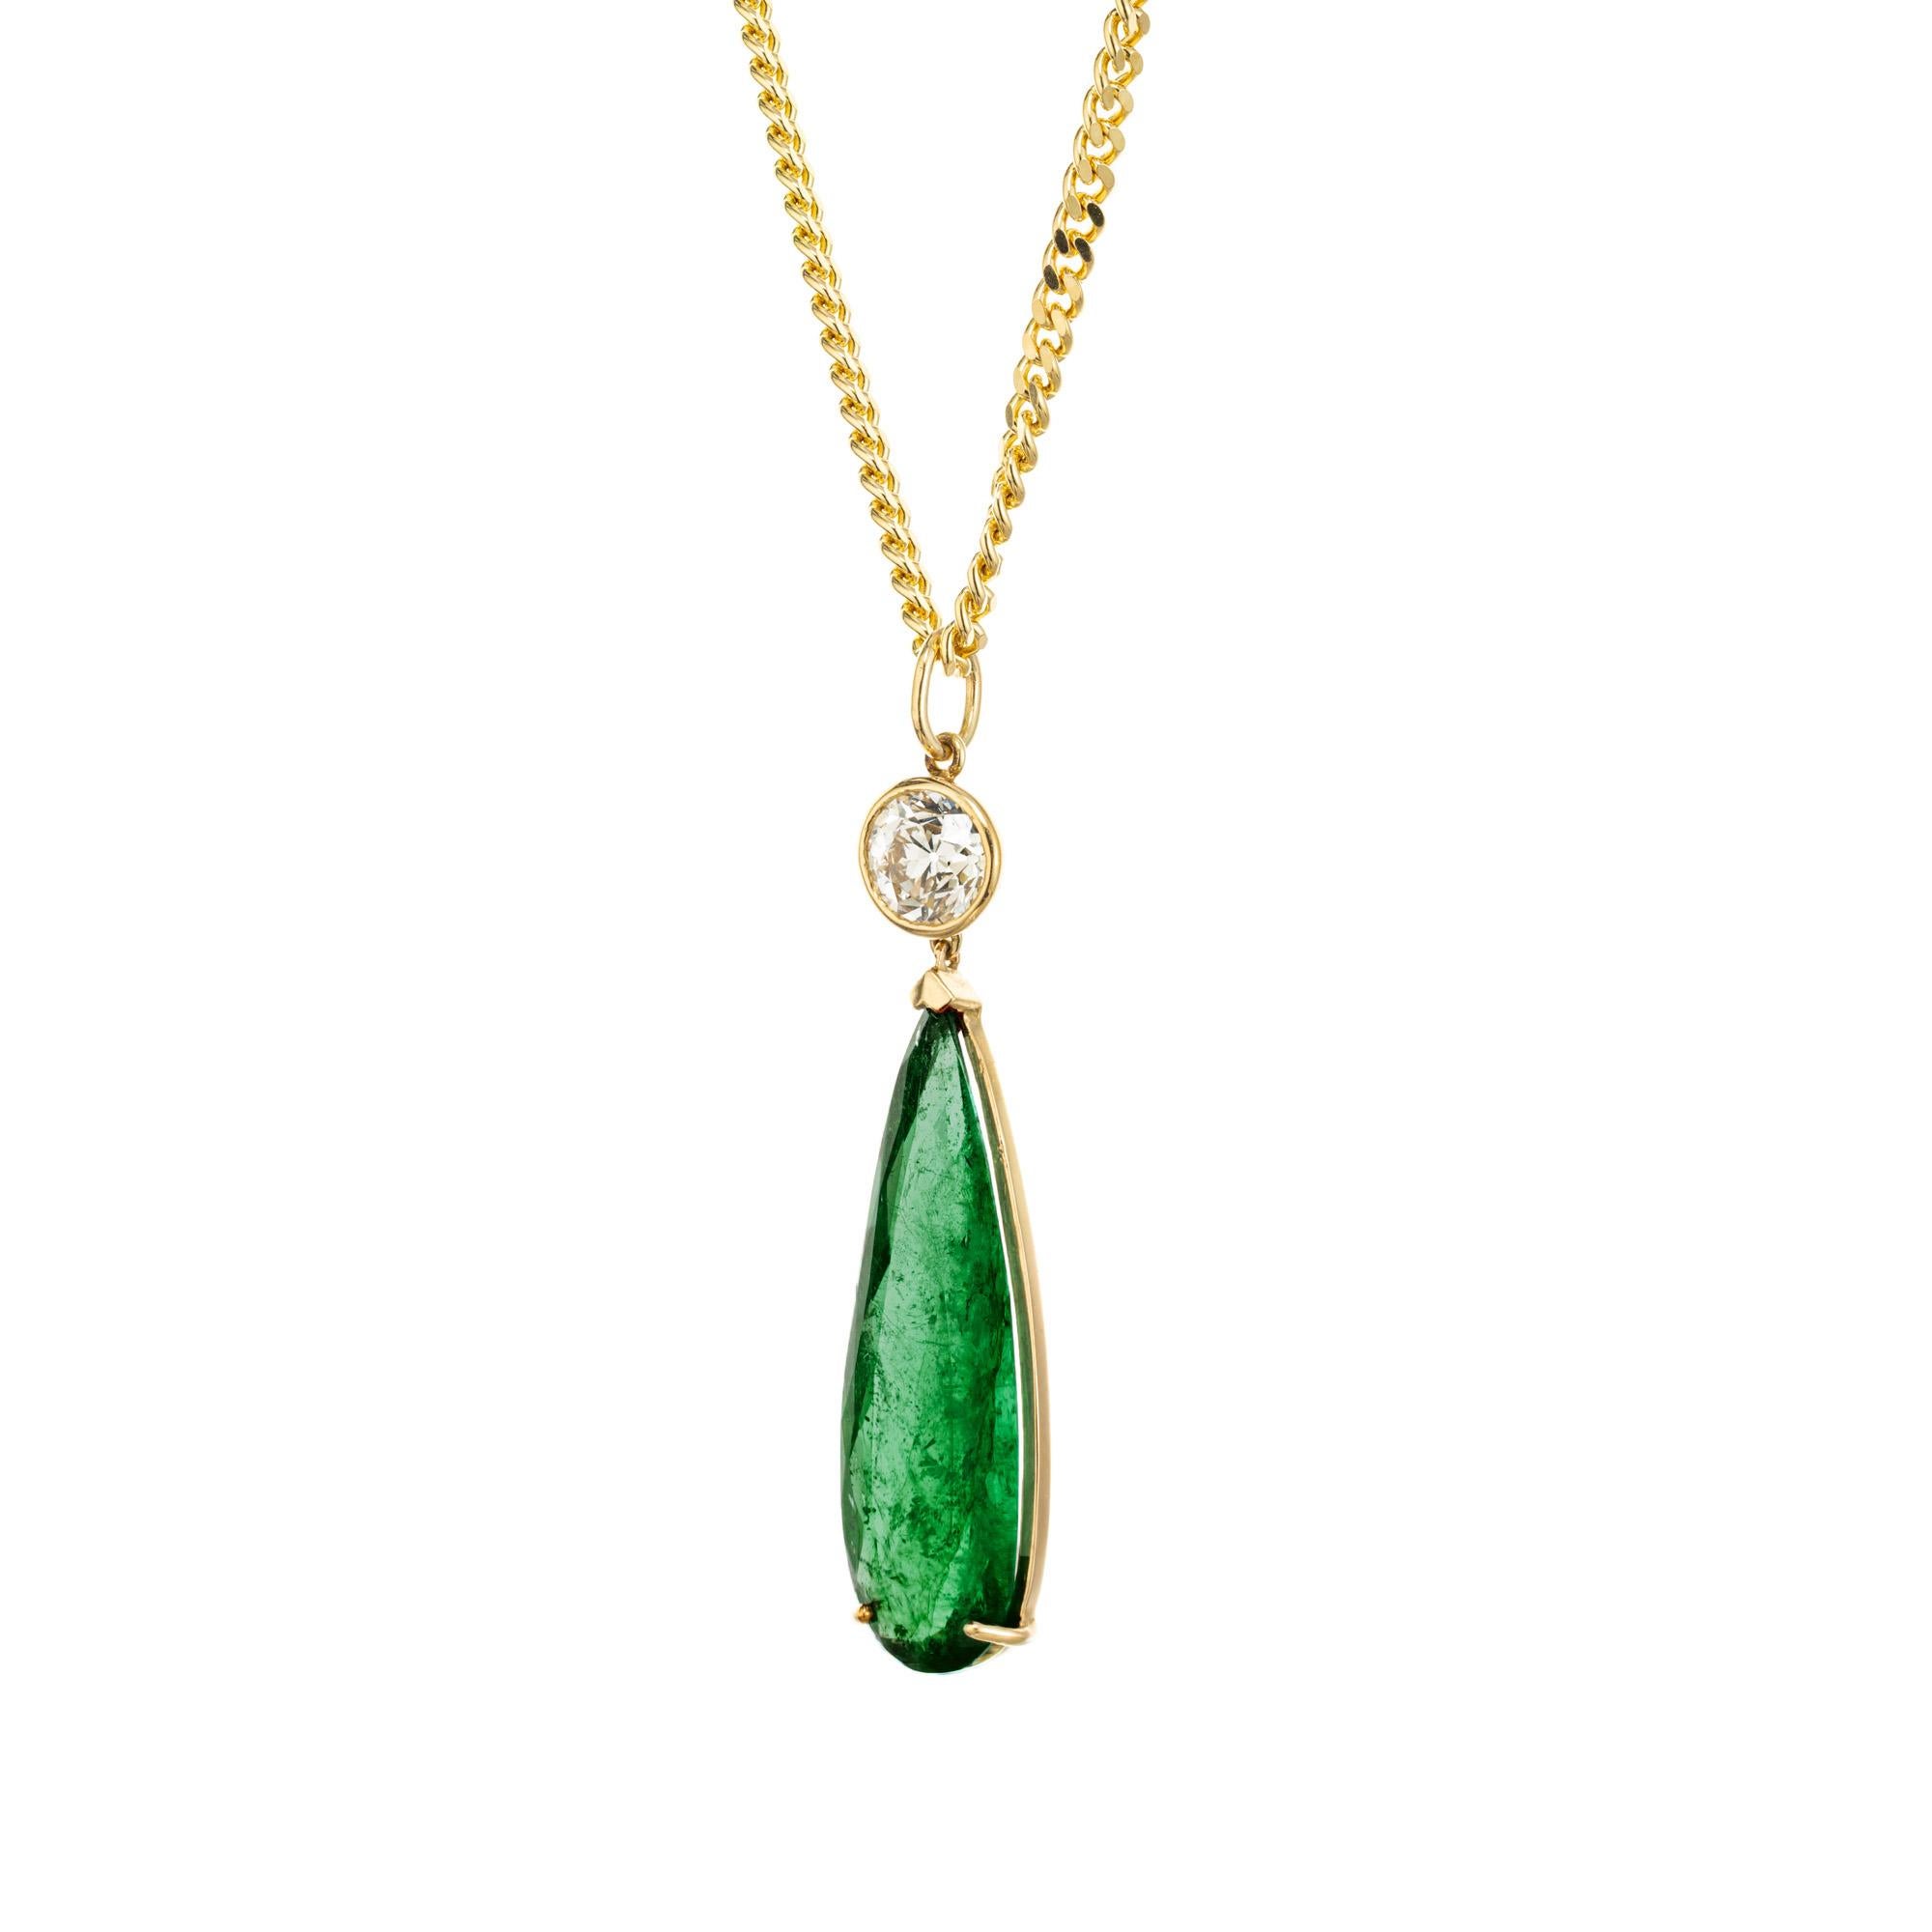 Halskette mit Smaragd- und Diamantanhänger. GIA zertifiziert 10,09ct natürlichen Smaragd moderate Klarheit Verbesserung nur längliche Birne Form in einer handgefertigten 18k Gelbgold Fassung mit einem 1,11ct alten europäischen Schnitt Lünette